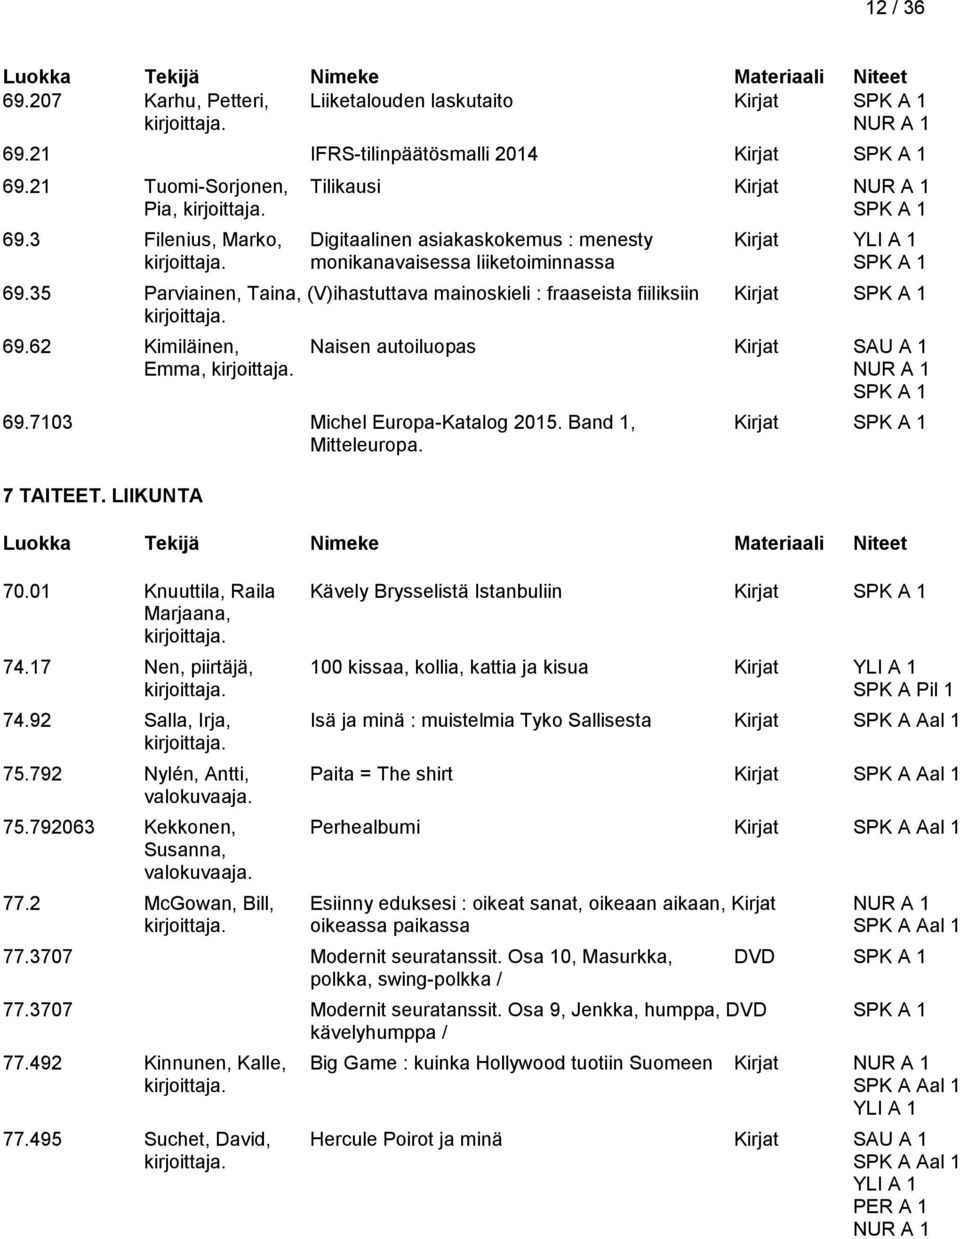 62 Kimiläinen, Naisen autoiluopas Kirjat SAU A 1 Emma, 69.7103 Michel Europa-Katalog 2015. Band 1, Kirjat Mitteleuropa. 7 TAITEET. LIIKUNTA 70.